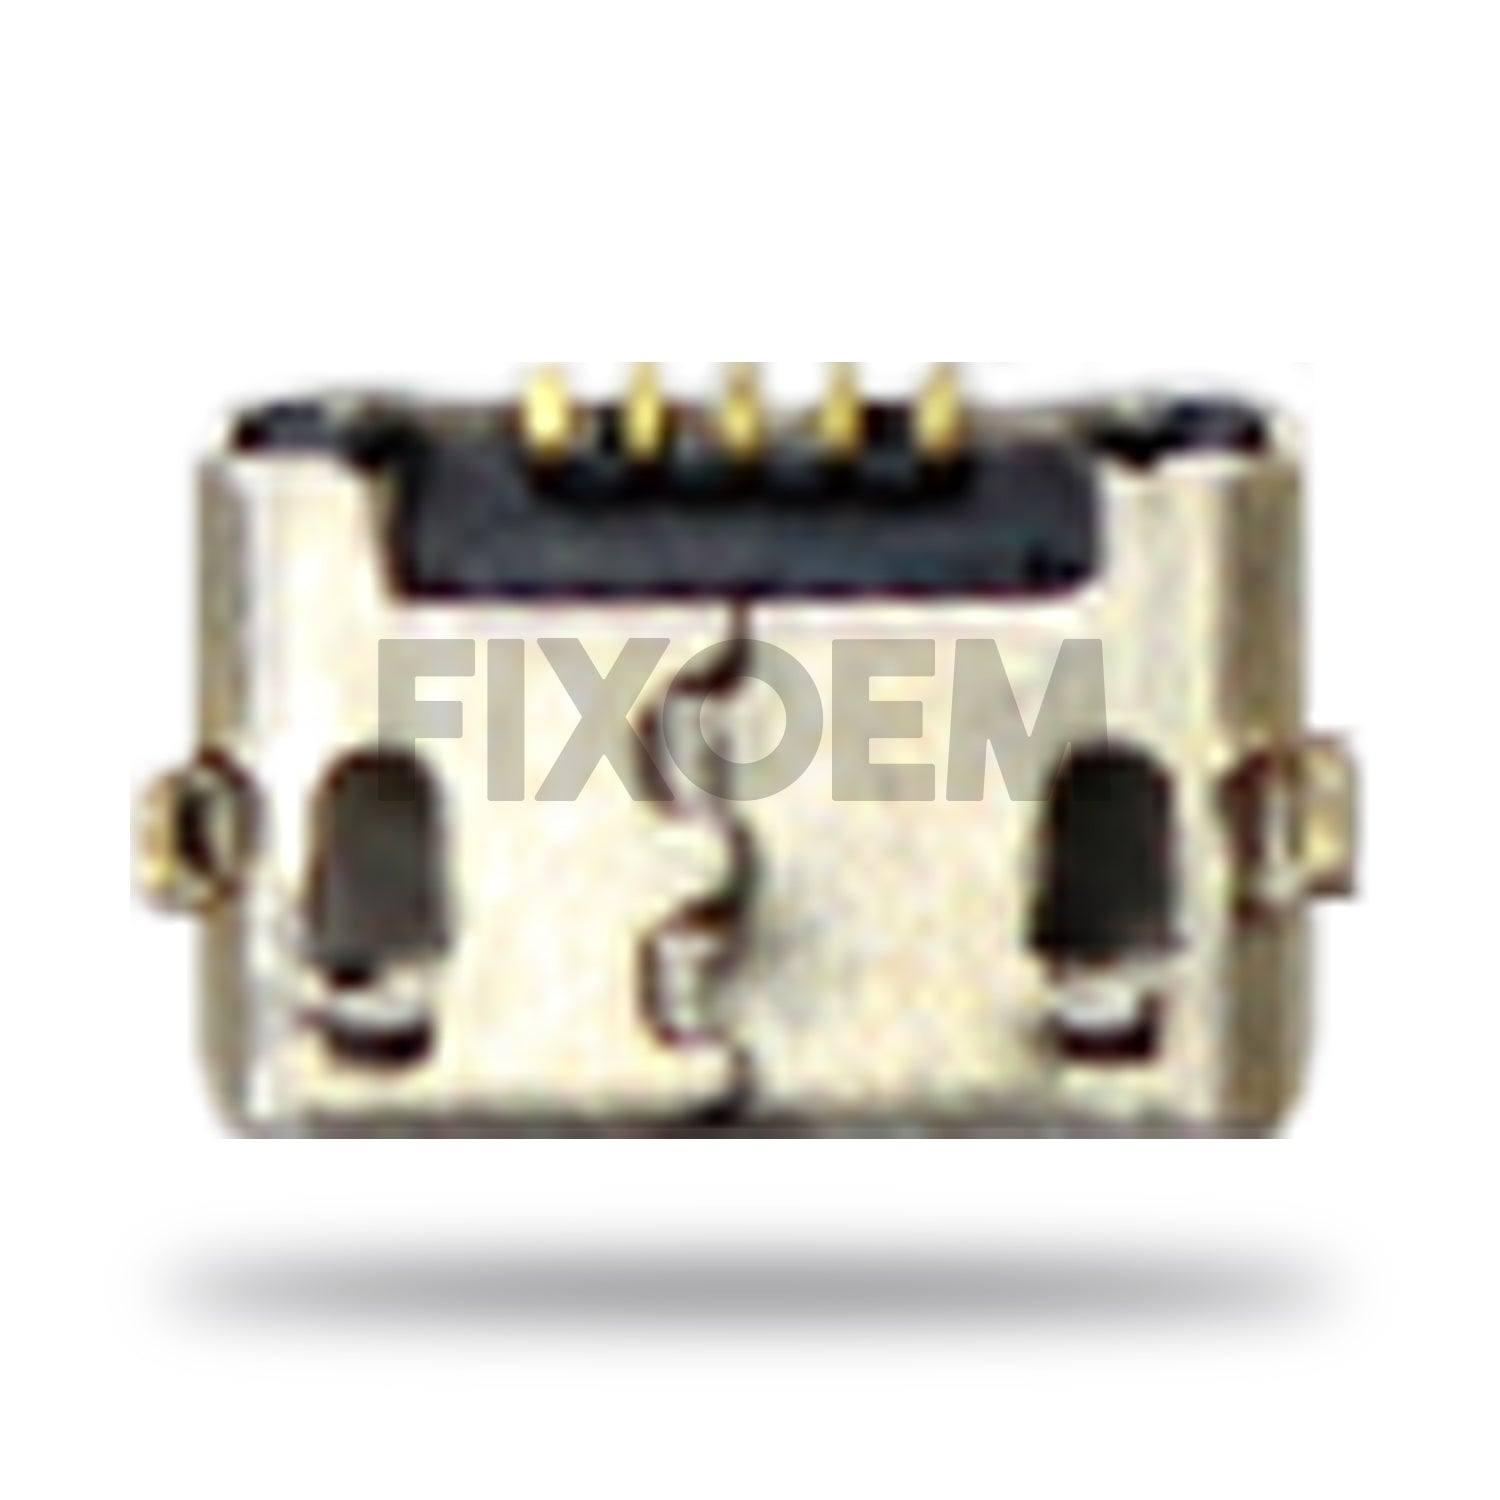 Pin Carga Alcatel U5 5044D a solo $ 20.00 Refaccion y puestos celulares, refurbish y microelectronica.- FixOEM